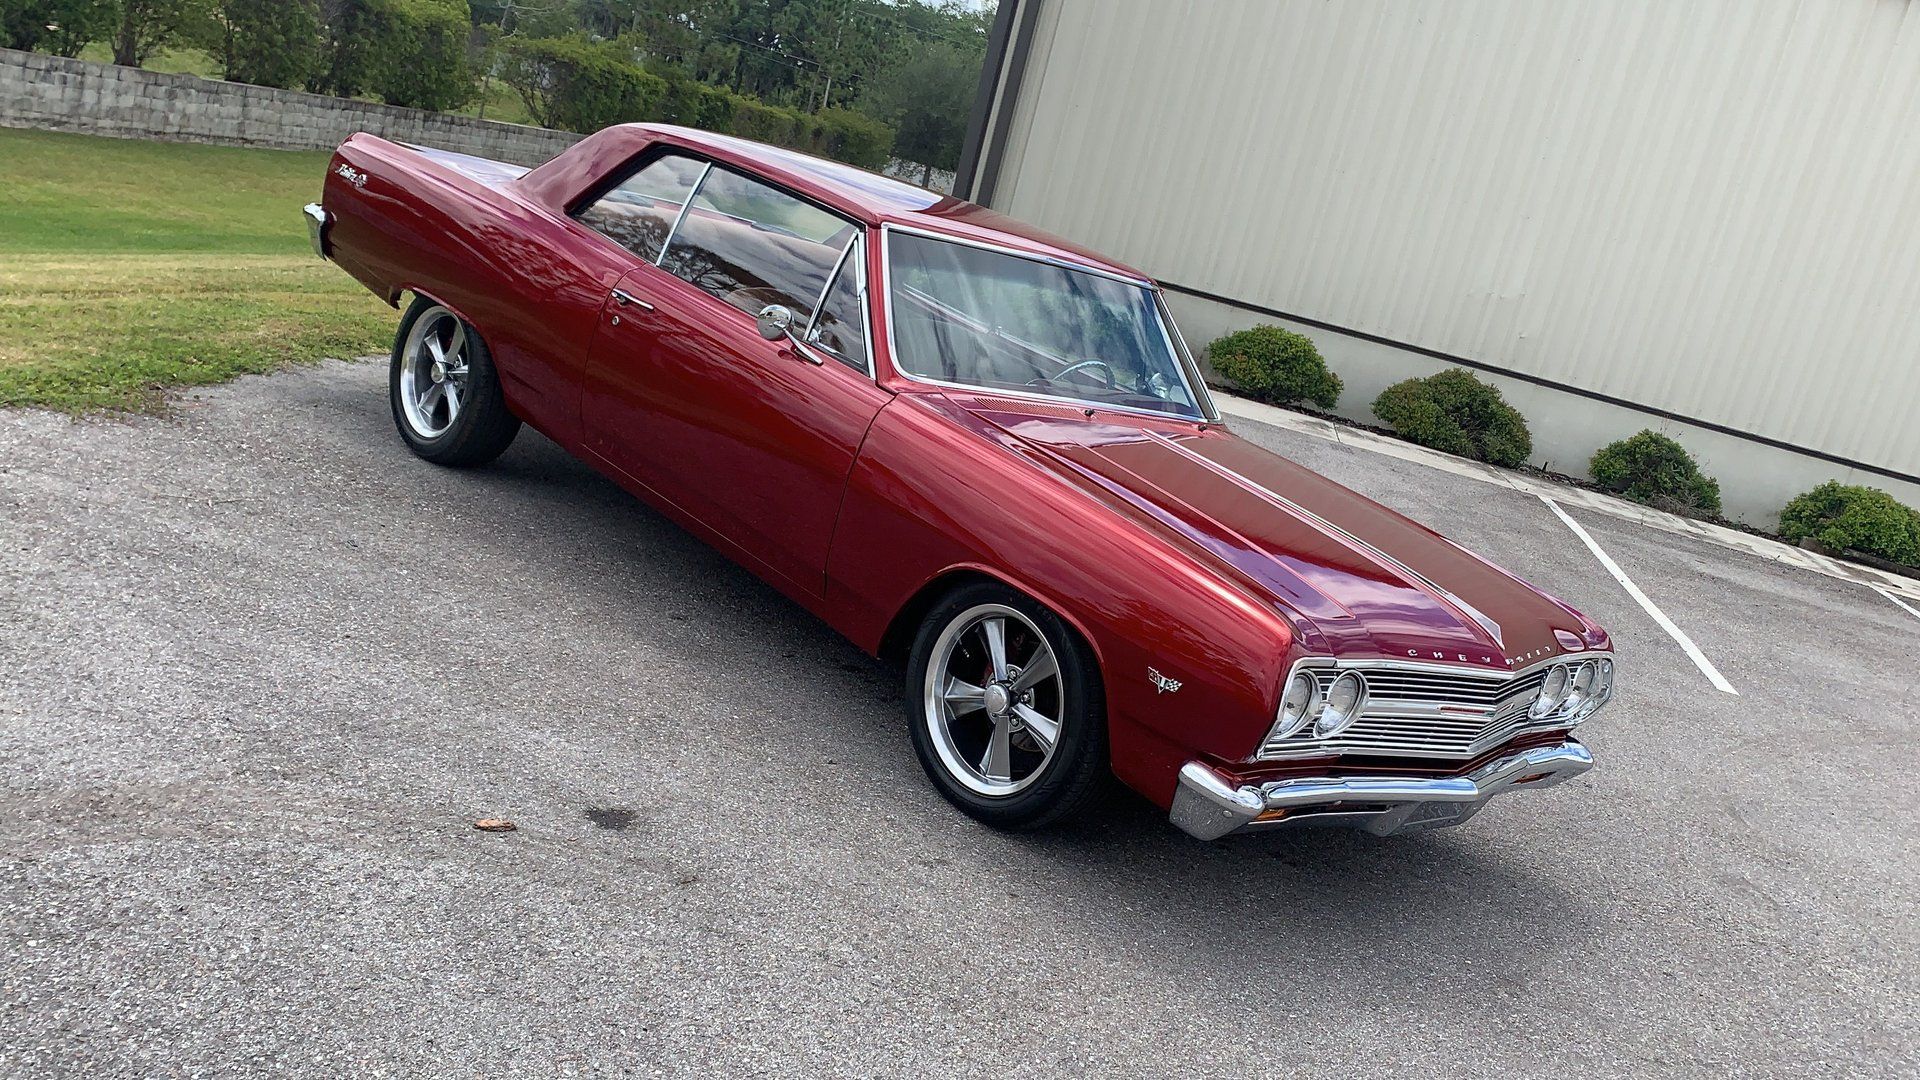 <img src="1965-chevy-malibu-2.jpg" alt="A stunning 1965 Chevrolet Chevelle Malibu restomod">